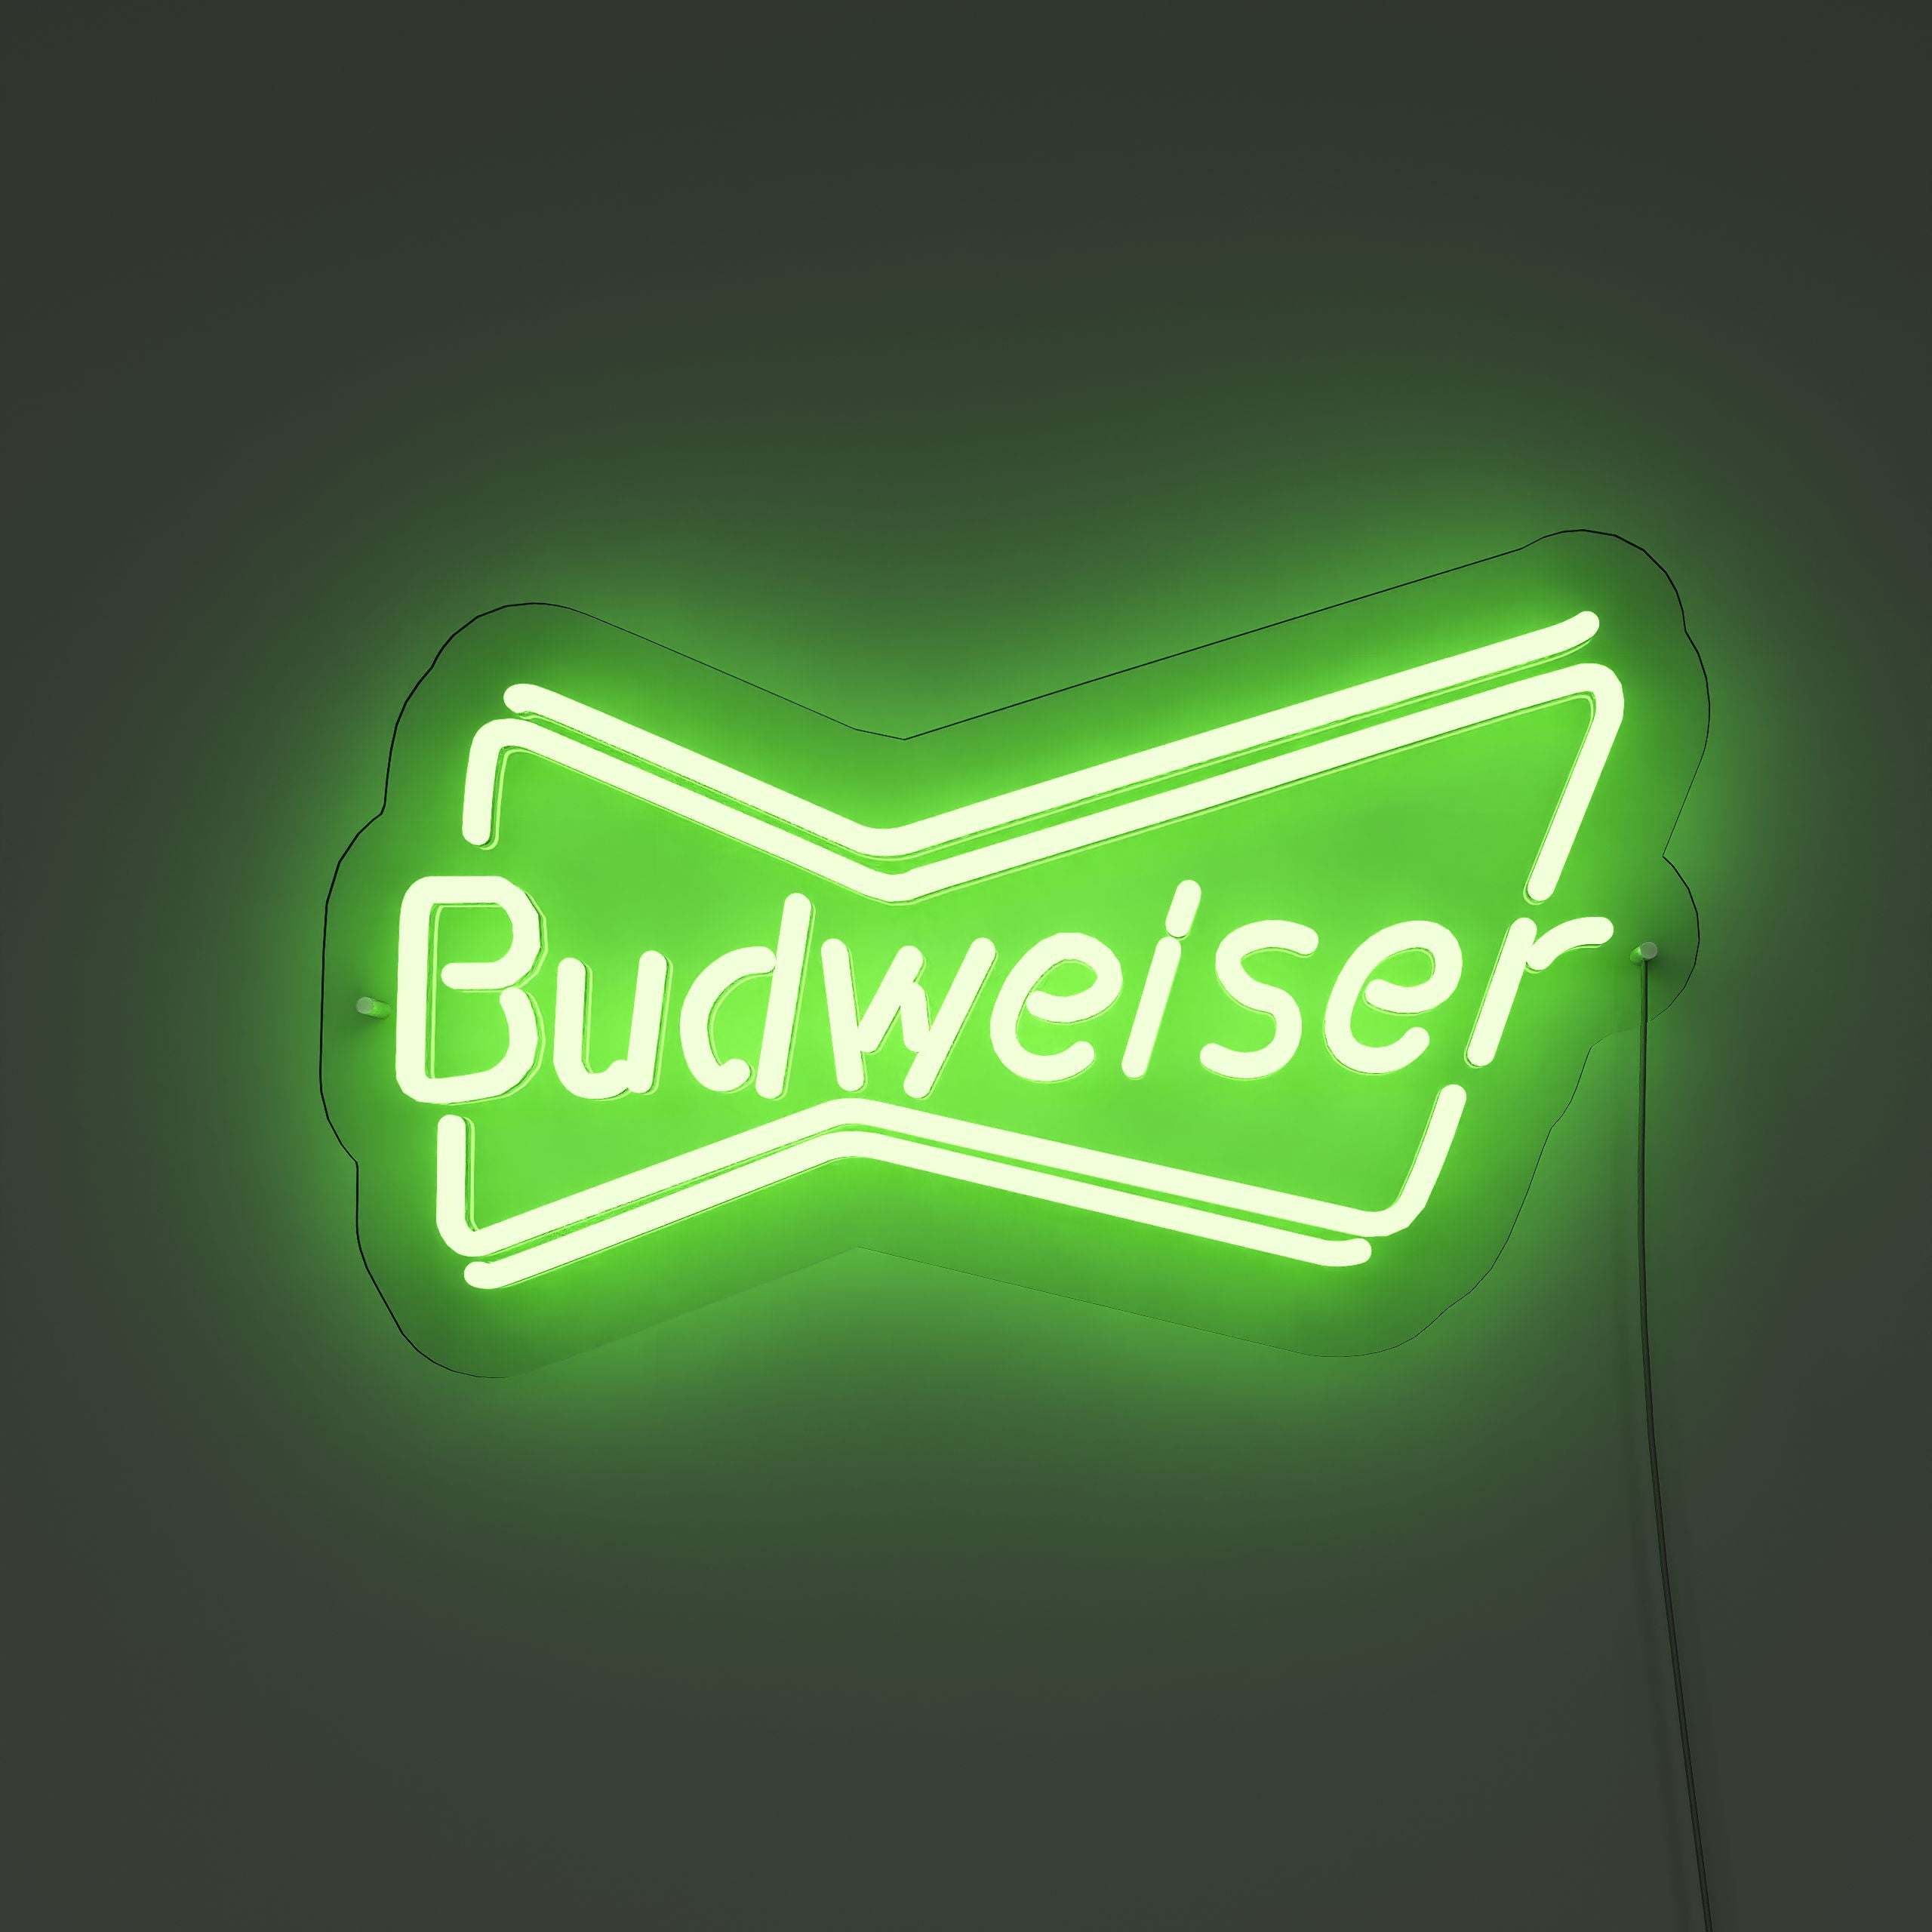 budweiser-neon-sign-ForestGreer-Neon-sign-Lite